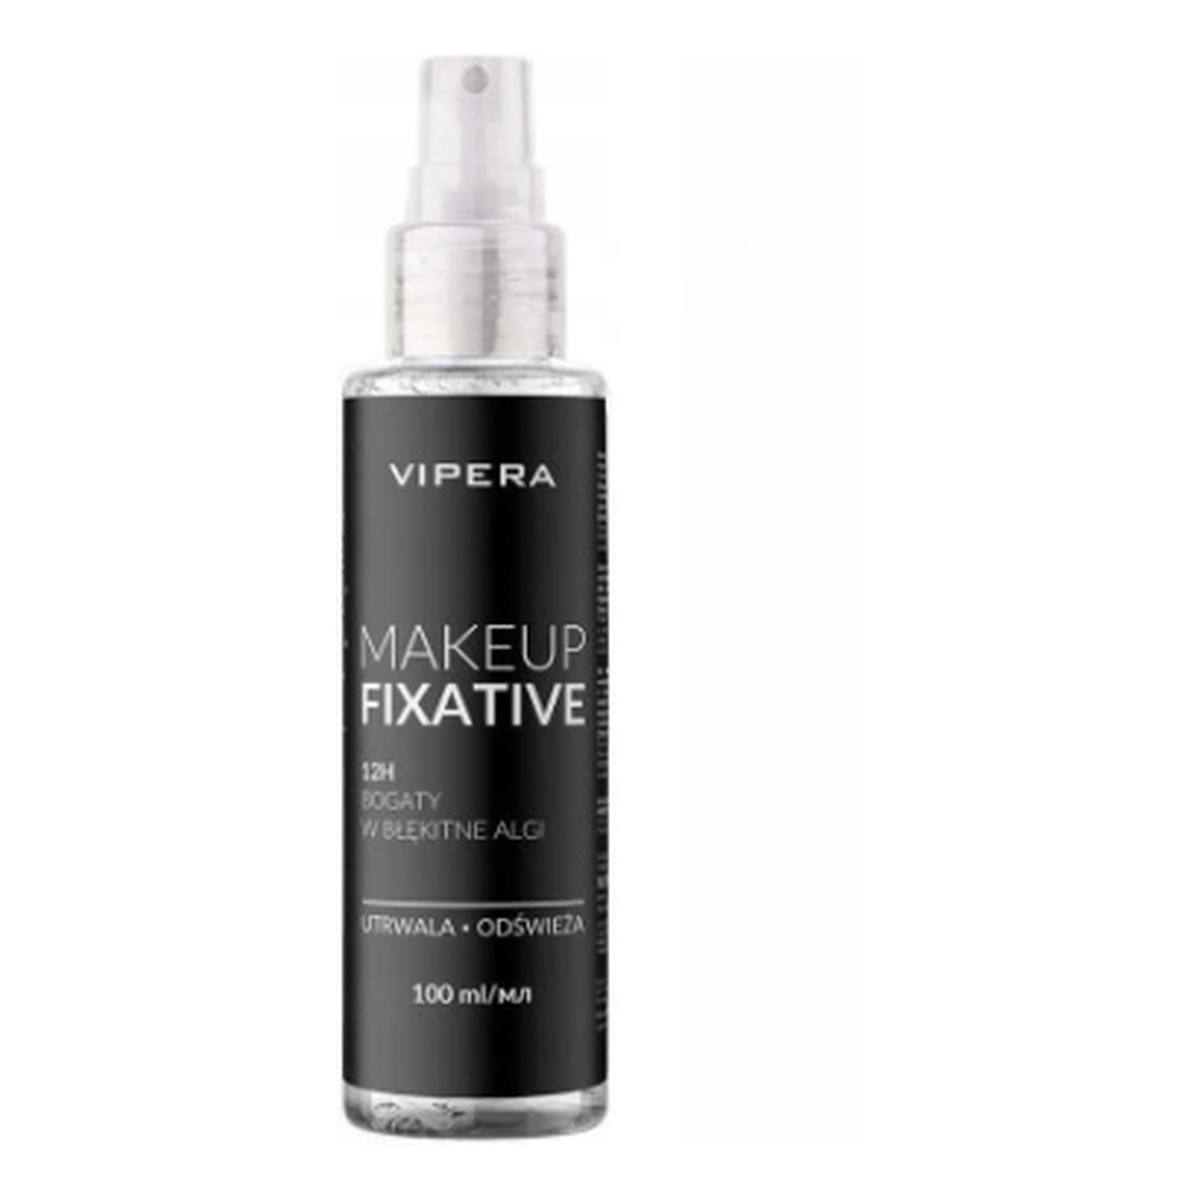 Vipera Makeup Fixative mgiełka w sprayu do utrwalenia makijażu 100ml